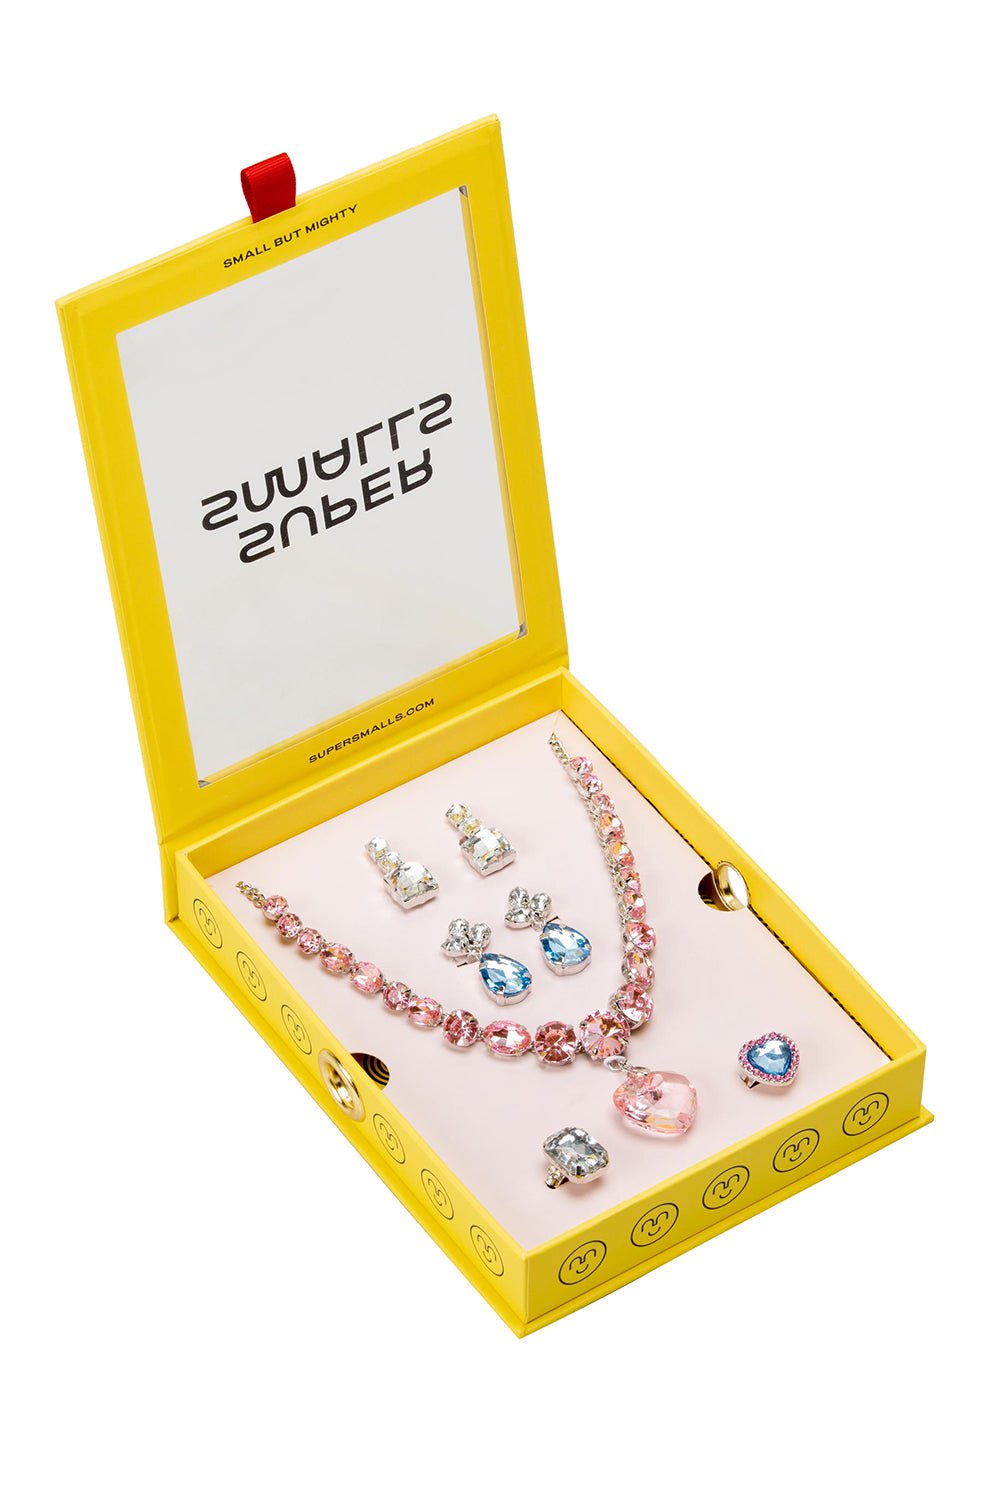 SUPER SMALLS-Big Presentation Mega Jewelry Set-PINK